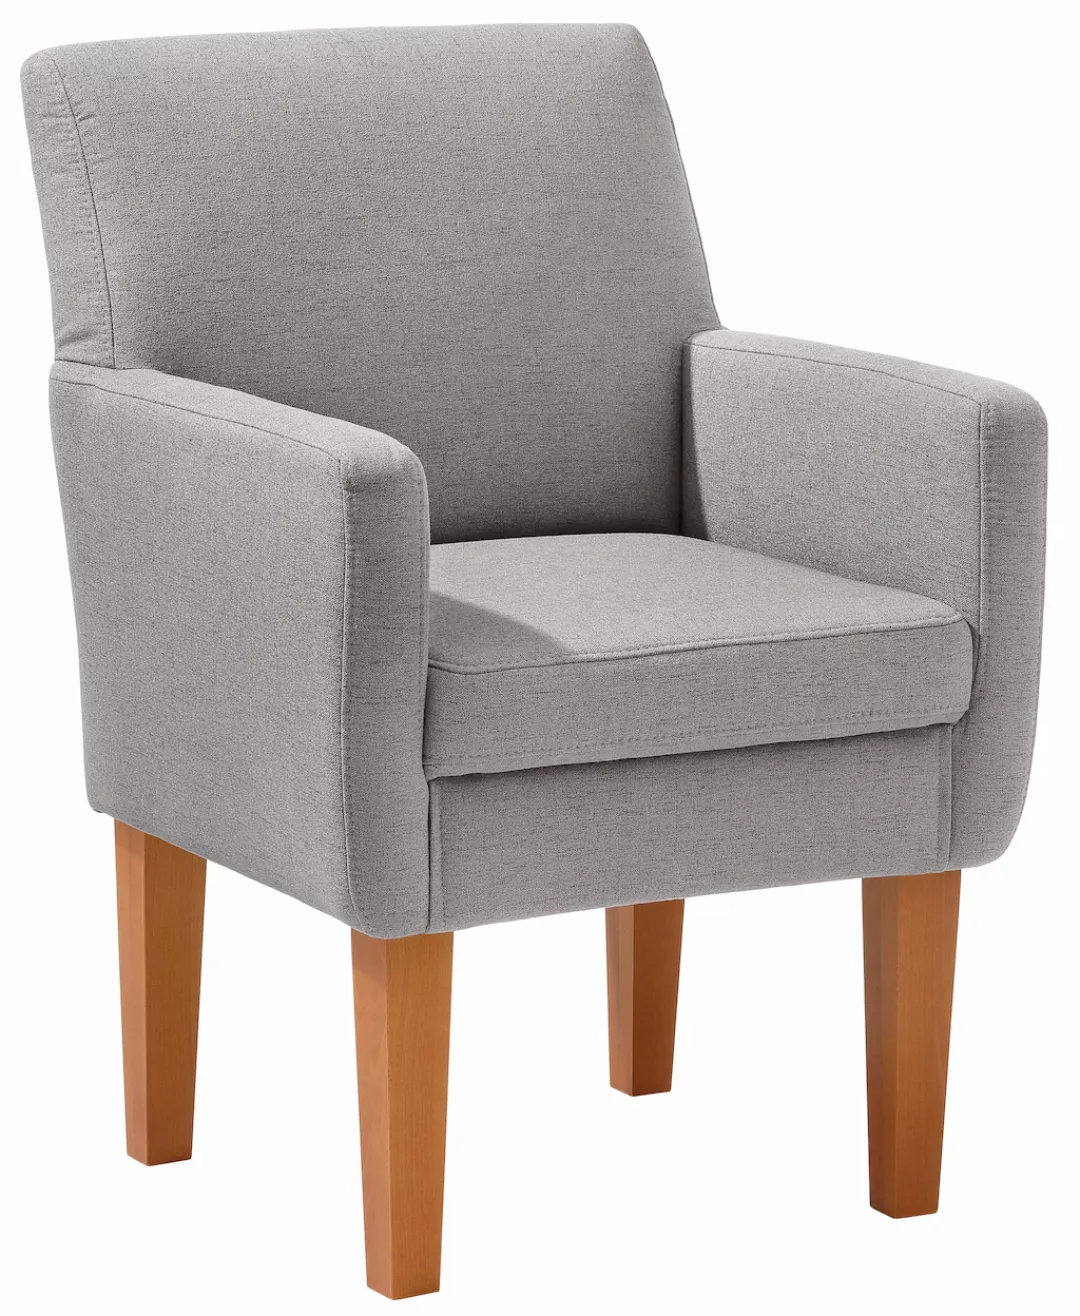 Home affaire Sessel "Fehmarn", komfortable Sitzhöhe von 54 cm, in 3 verschi günstig online kaufen